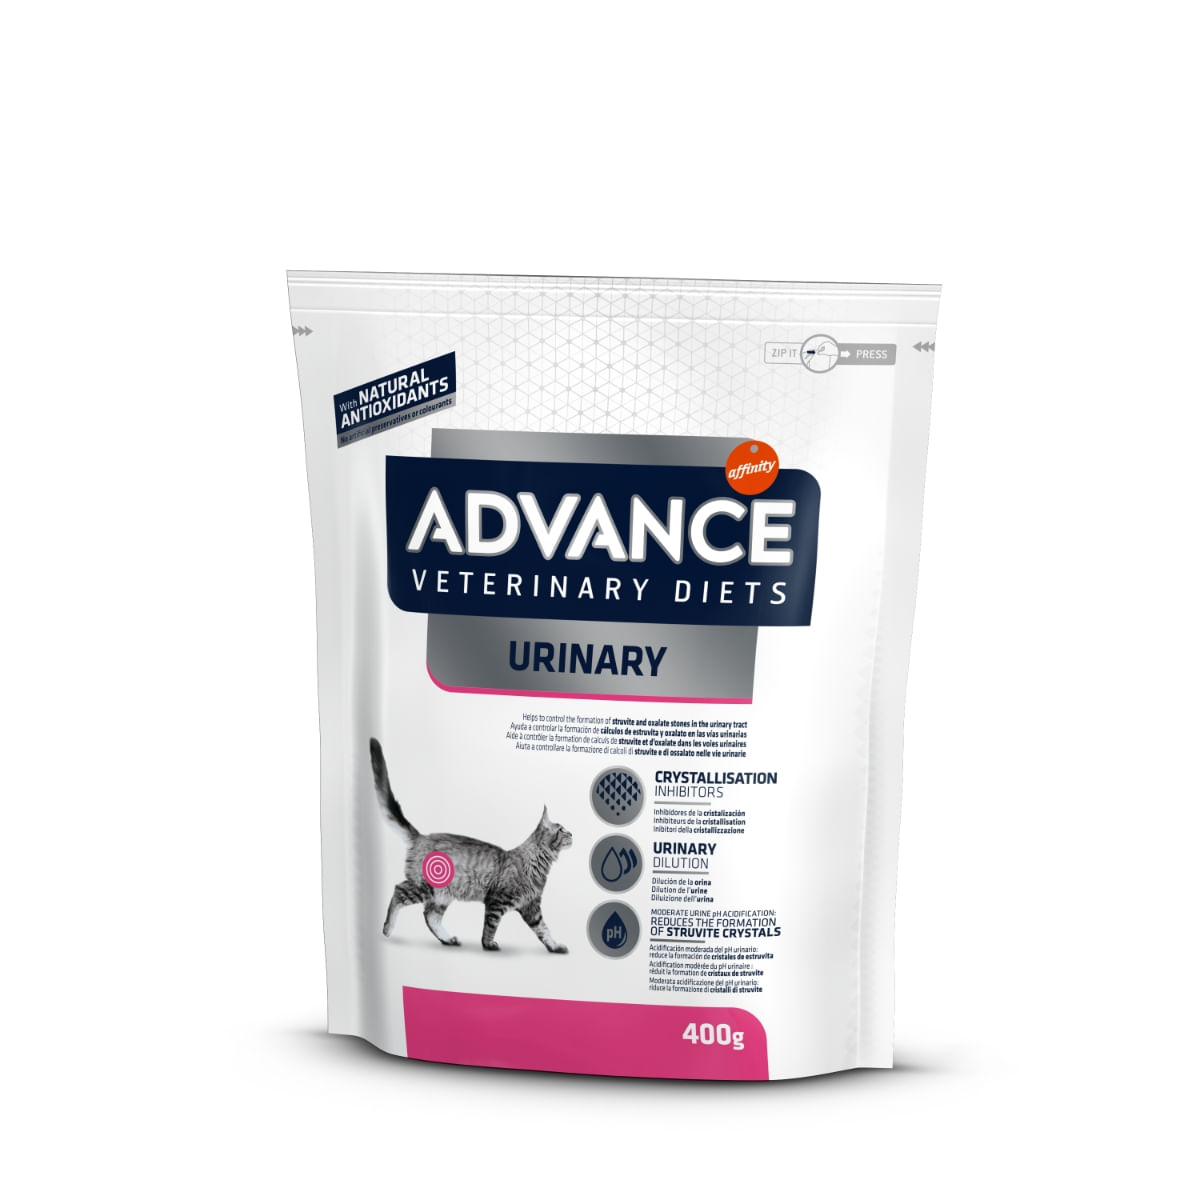 ADVANCE Veterinary Diets Cat Urinary, dietă veterinară, hrană uscată pisici, afecțiuni urinare ADVANCE Veterinary Diets Urinary, dietă veterinară pisici, hrană uscată, sistem urinar, 400g